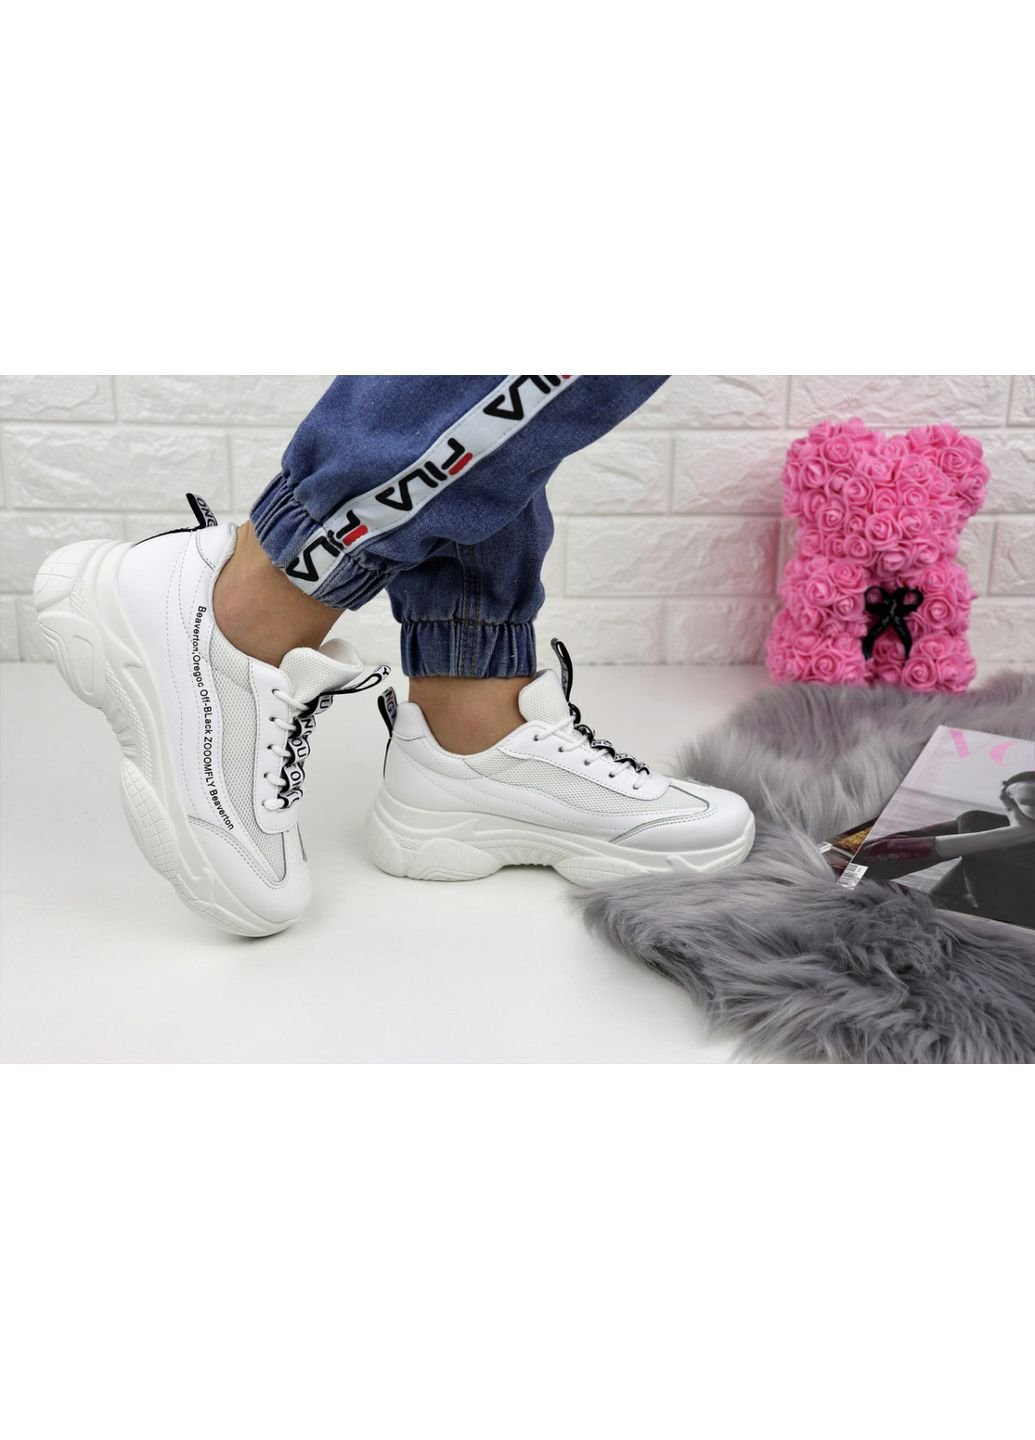 Белые демисезонные женские кроссовки tinoa 1151 36 23 см белый Fashion